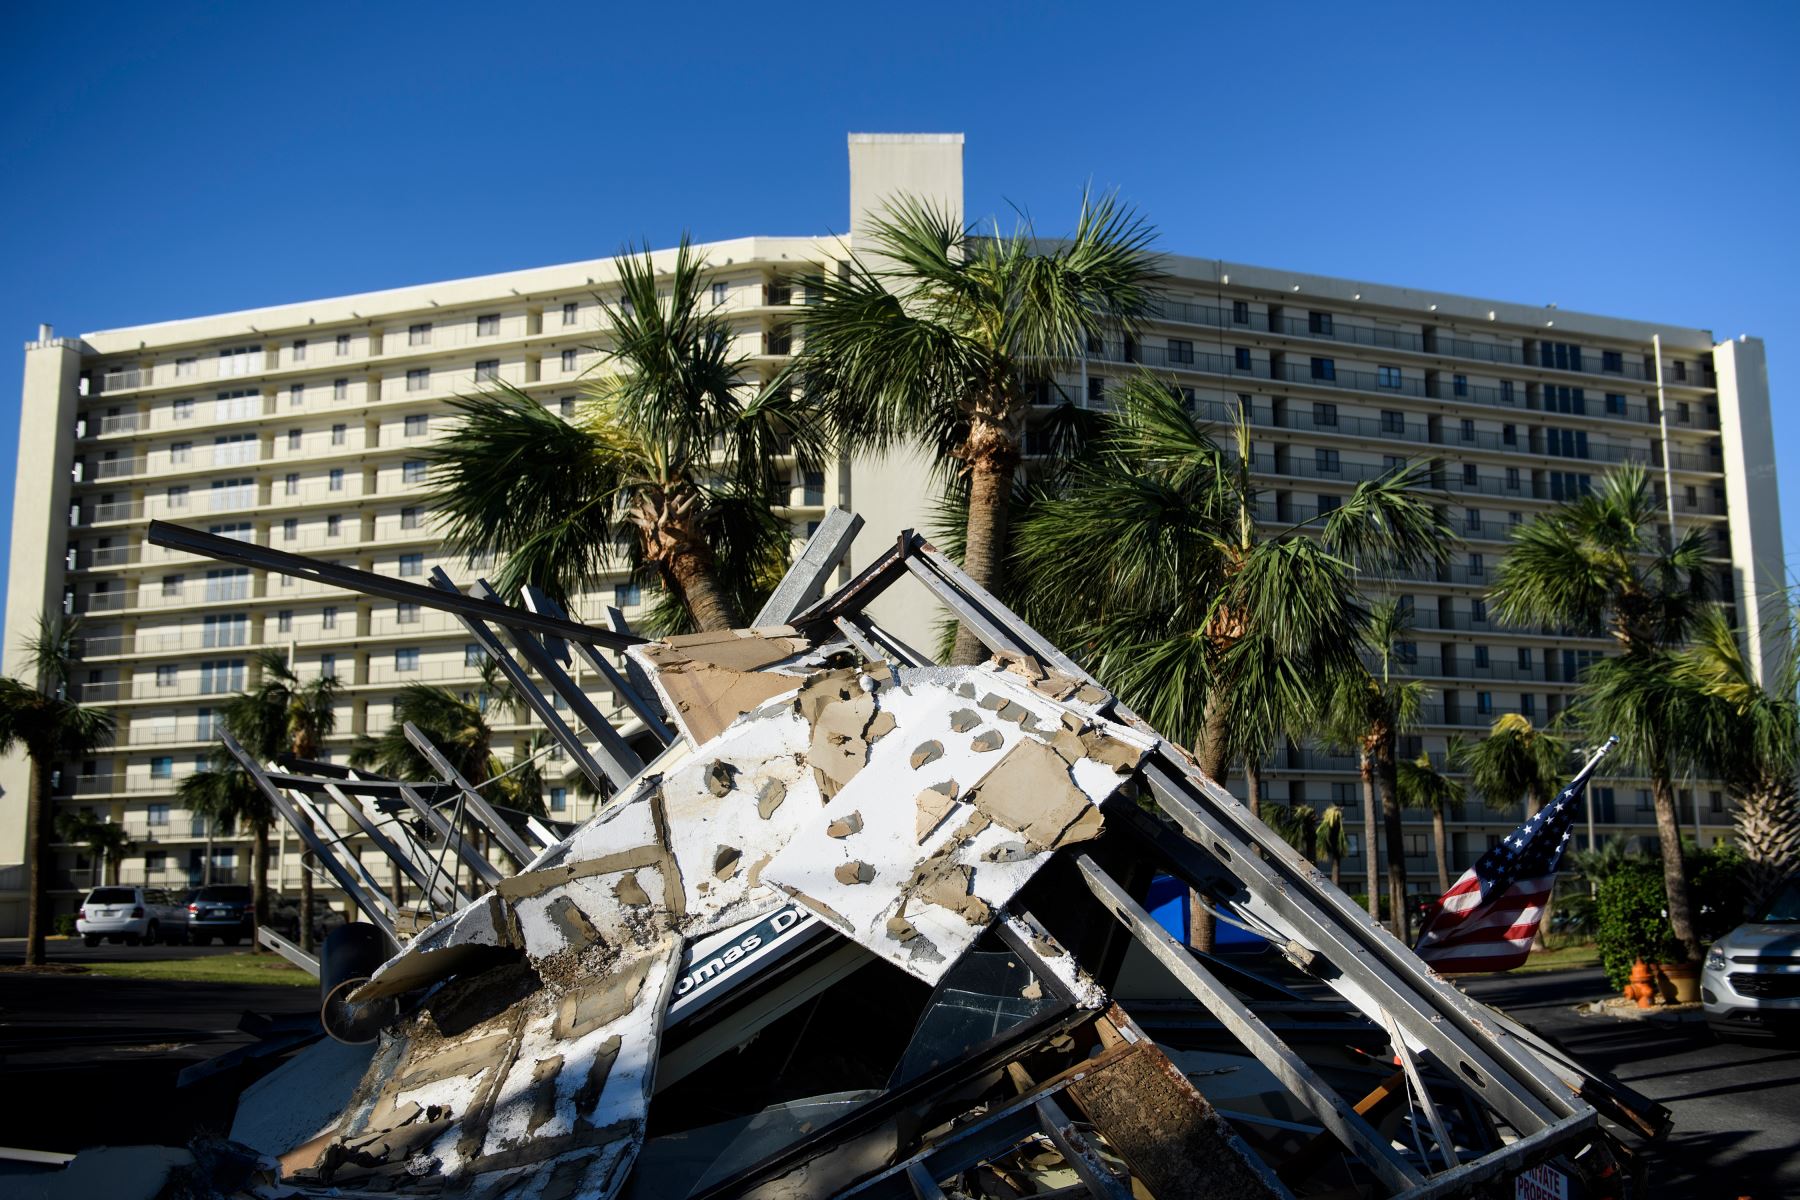 El 12 de octubre de 2018 en Panama City Beach, Florida, se vio una casa de vigilancia destruida tras el huracán Michael. - Los equipos de búsqueda y rescate se enfrentaron a un segundo día de revisión del arruinado paisaje dejado por el huracán Michael el viernes cuando el número de muertos aumentó a 11. AFP